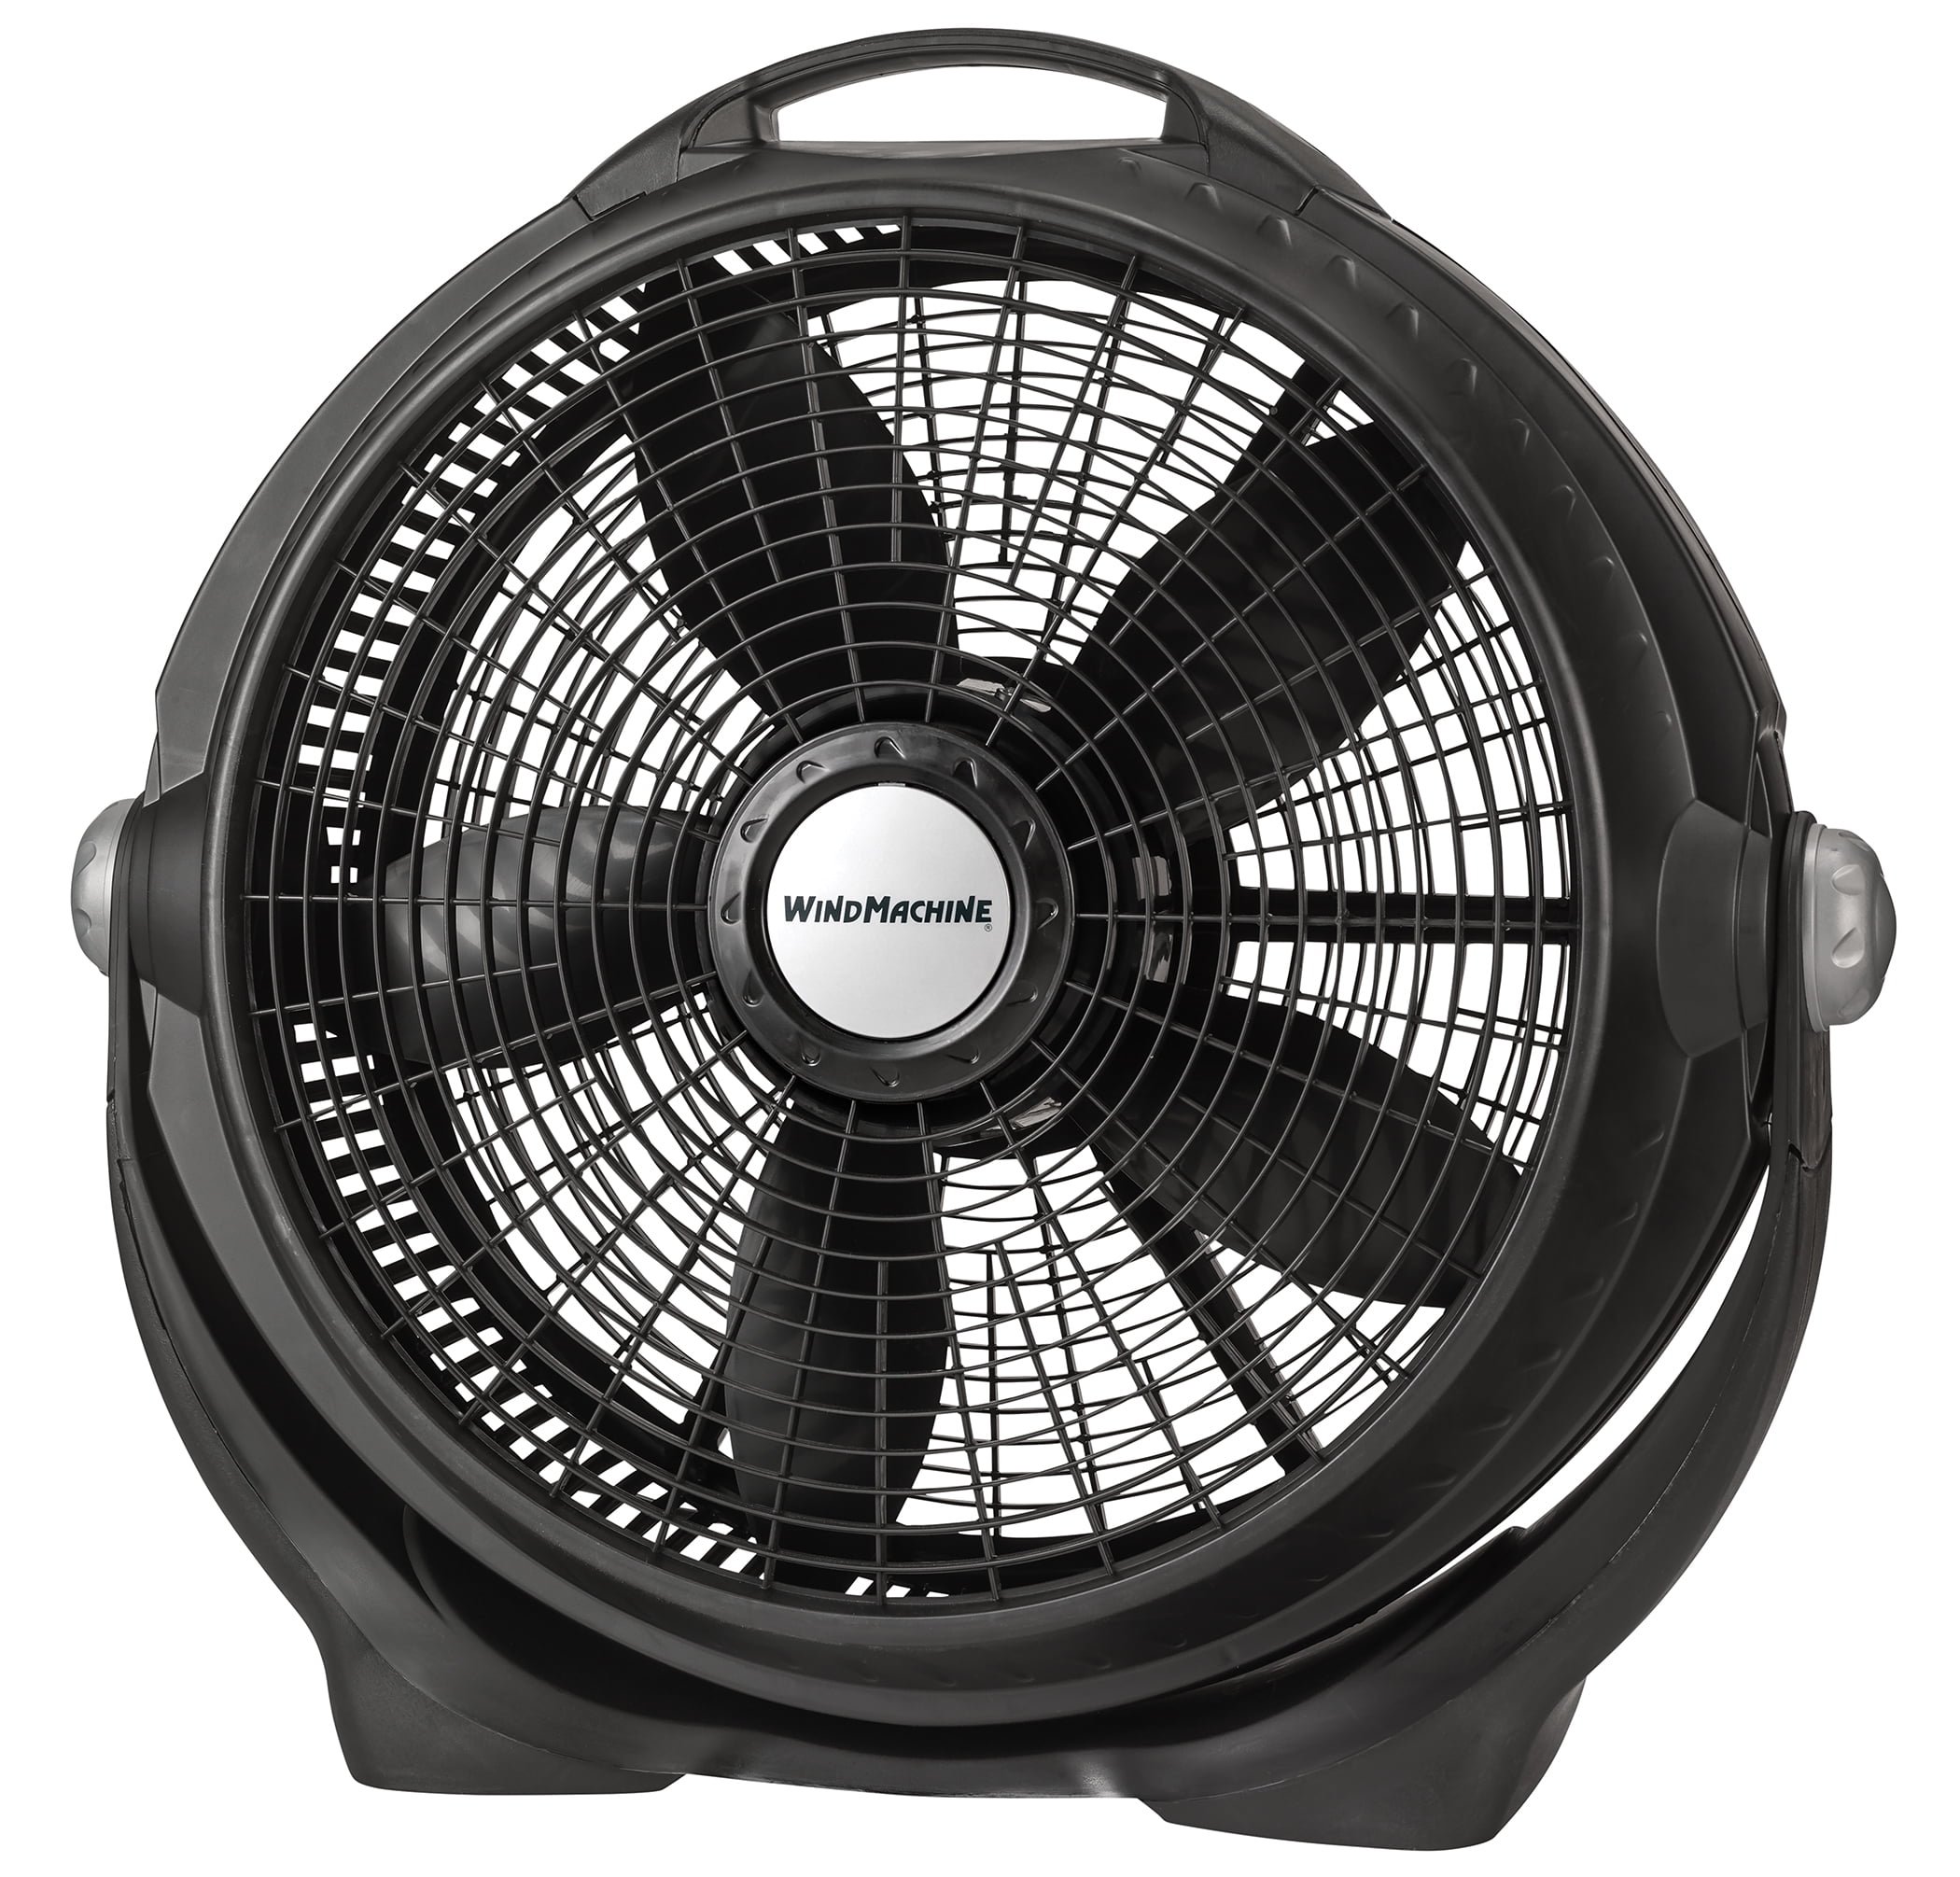 Lasko Wind Machine Air Circulator Floor Fan with 3 Speeds, A20302